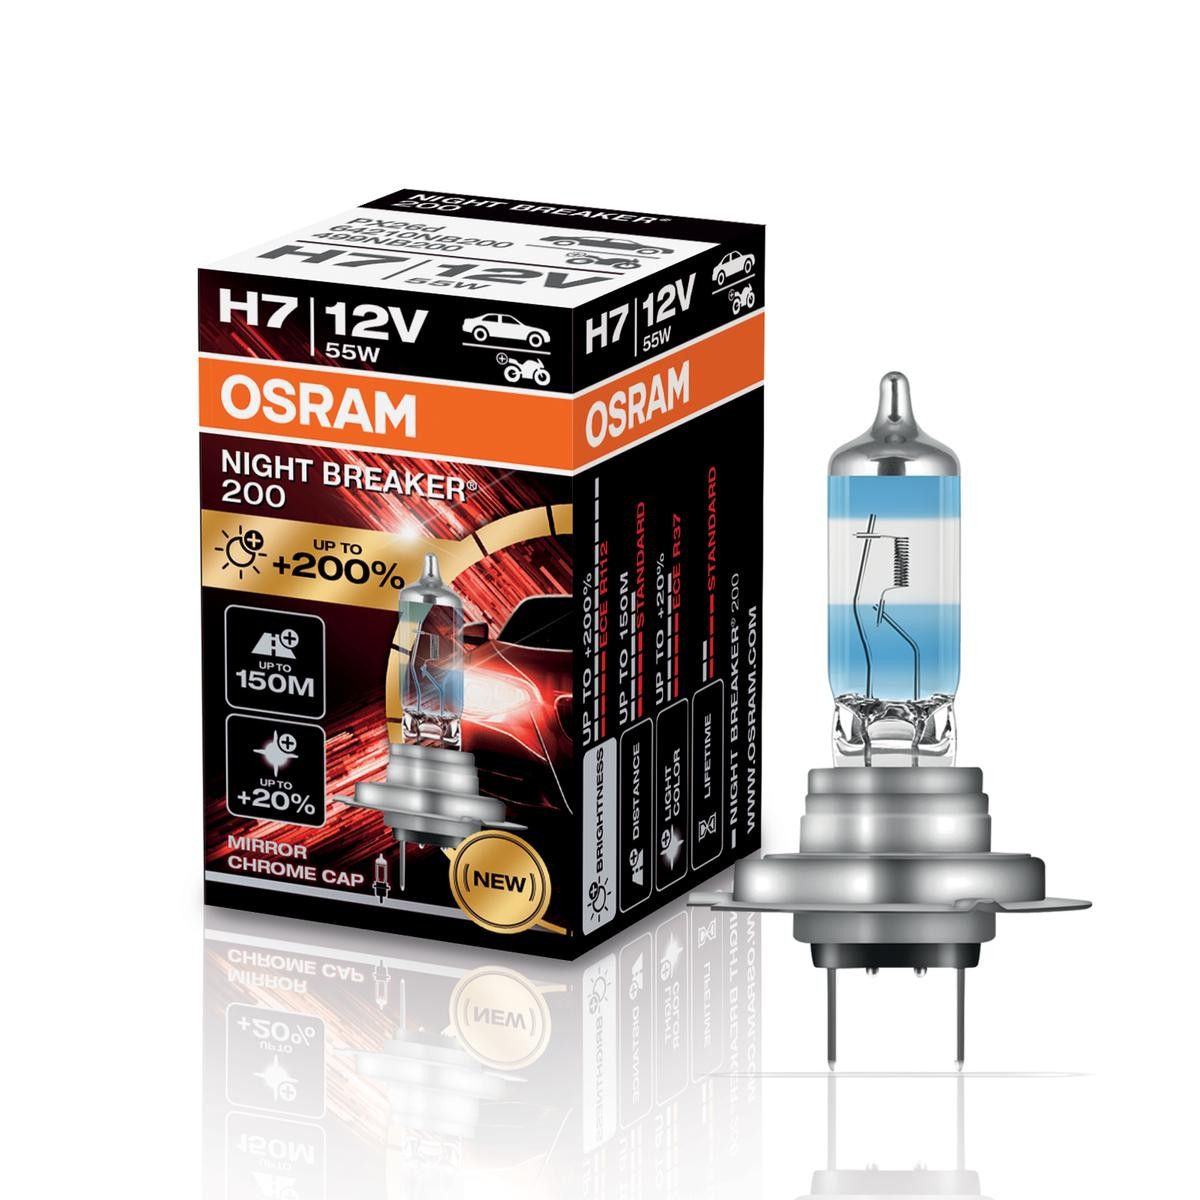 H7 55W Osram Birnen 12V für BMW Lampen Halogen Lampe Night Breaker